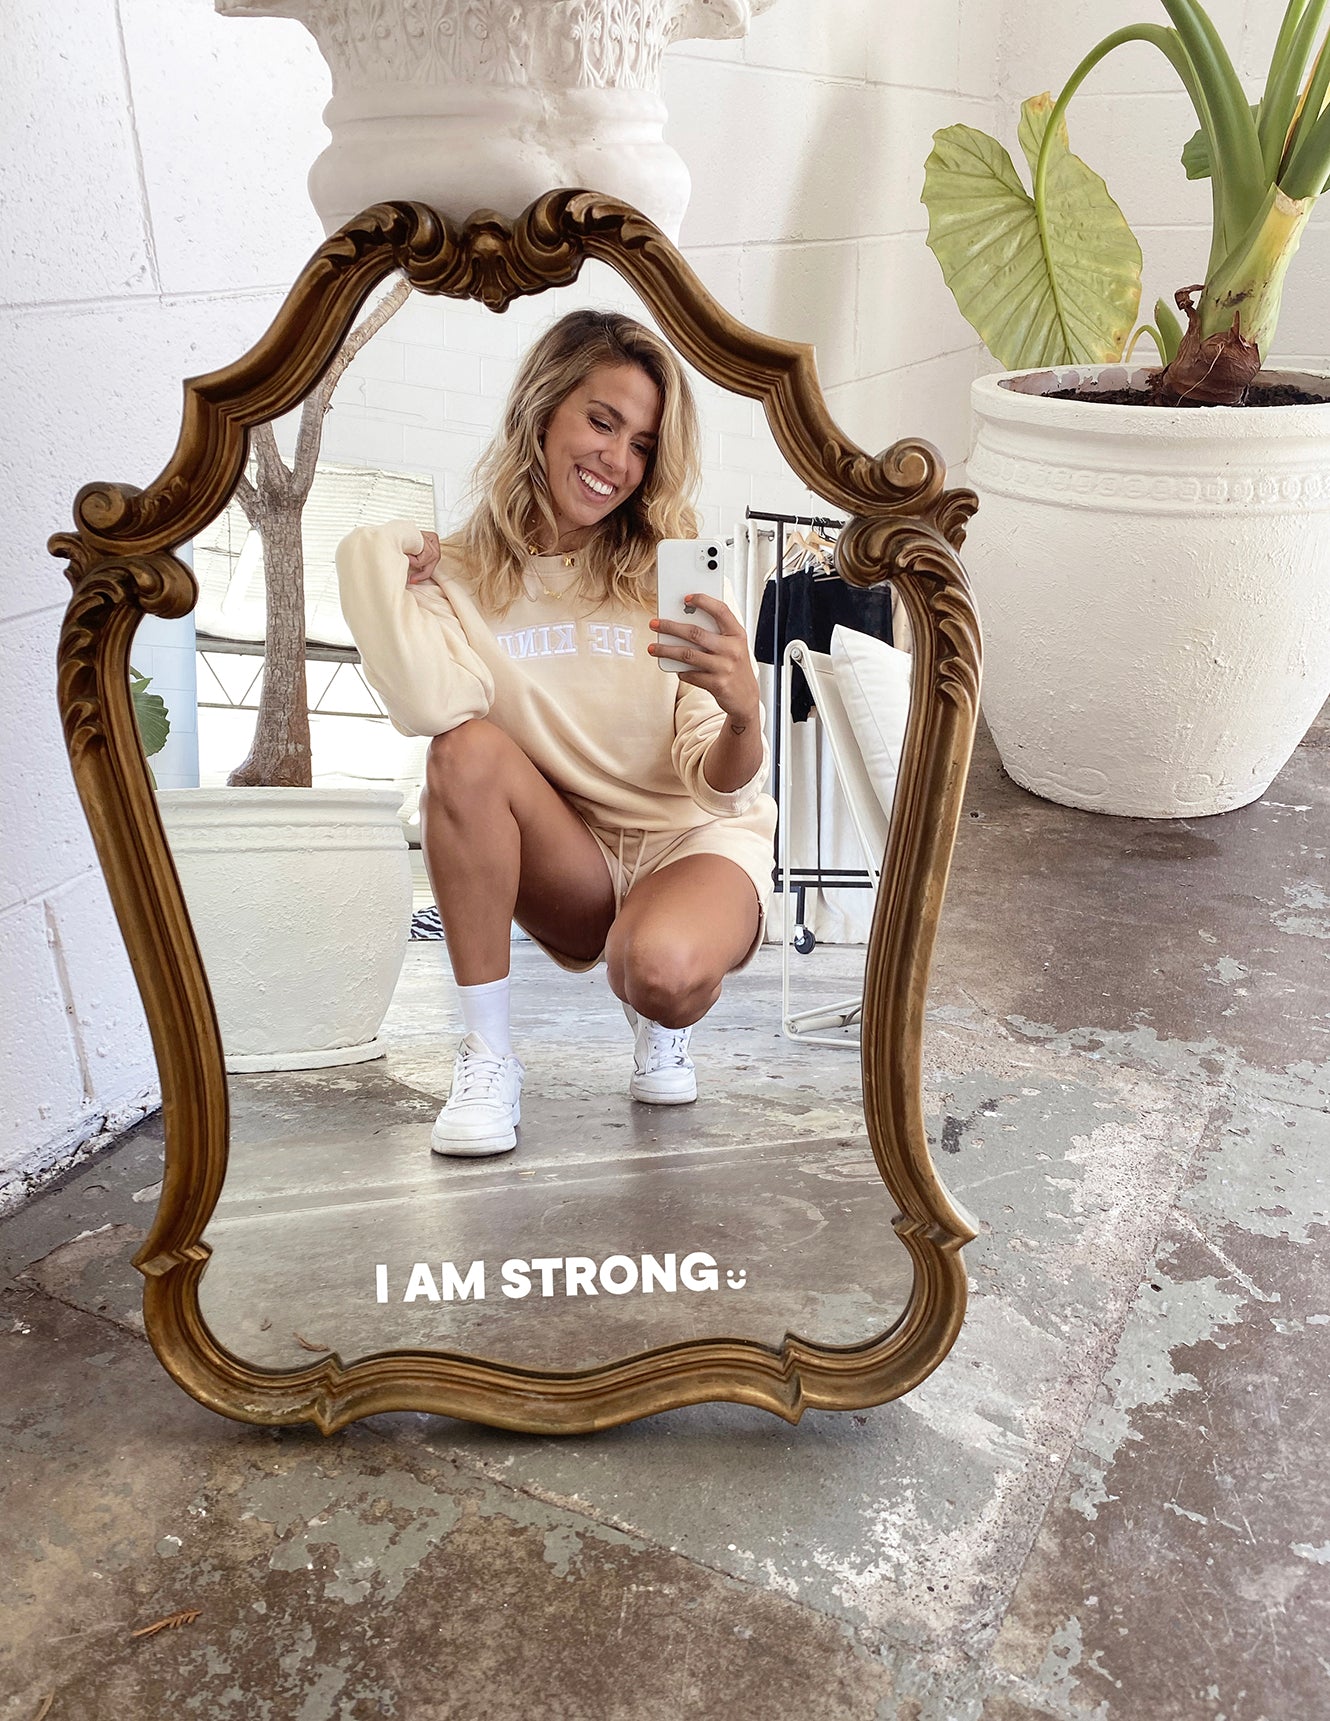 I AM STRONG. - Affirmation Mirror Sticker Selfawear 